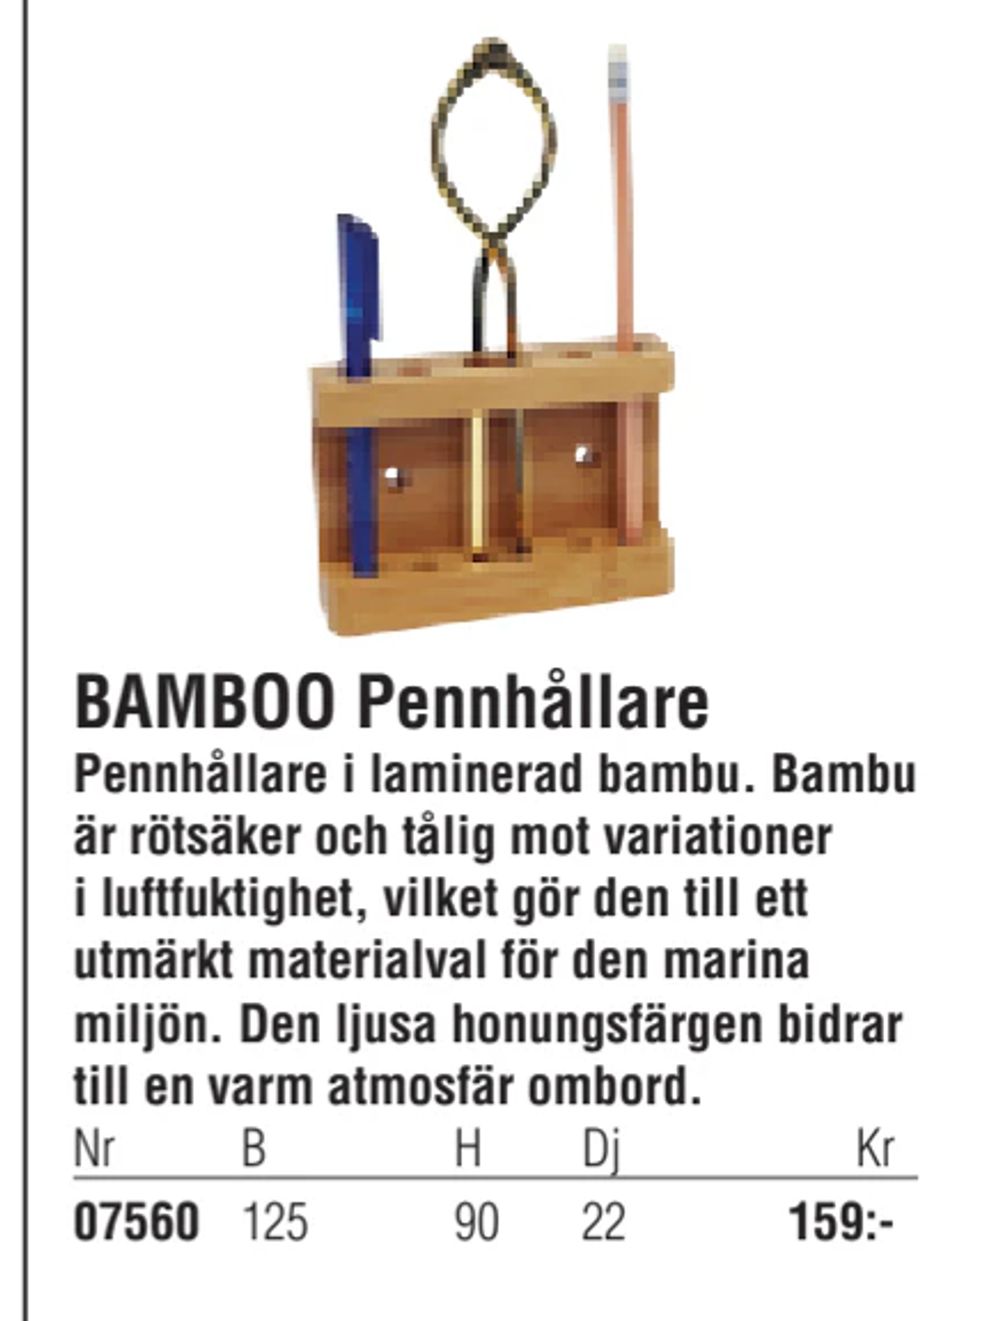 Erbjudanden på BAMBOO Pennhållare från Erlandsons Brygga för 159 kr